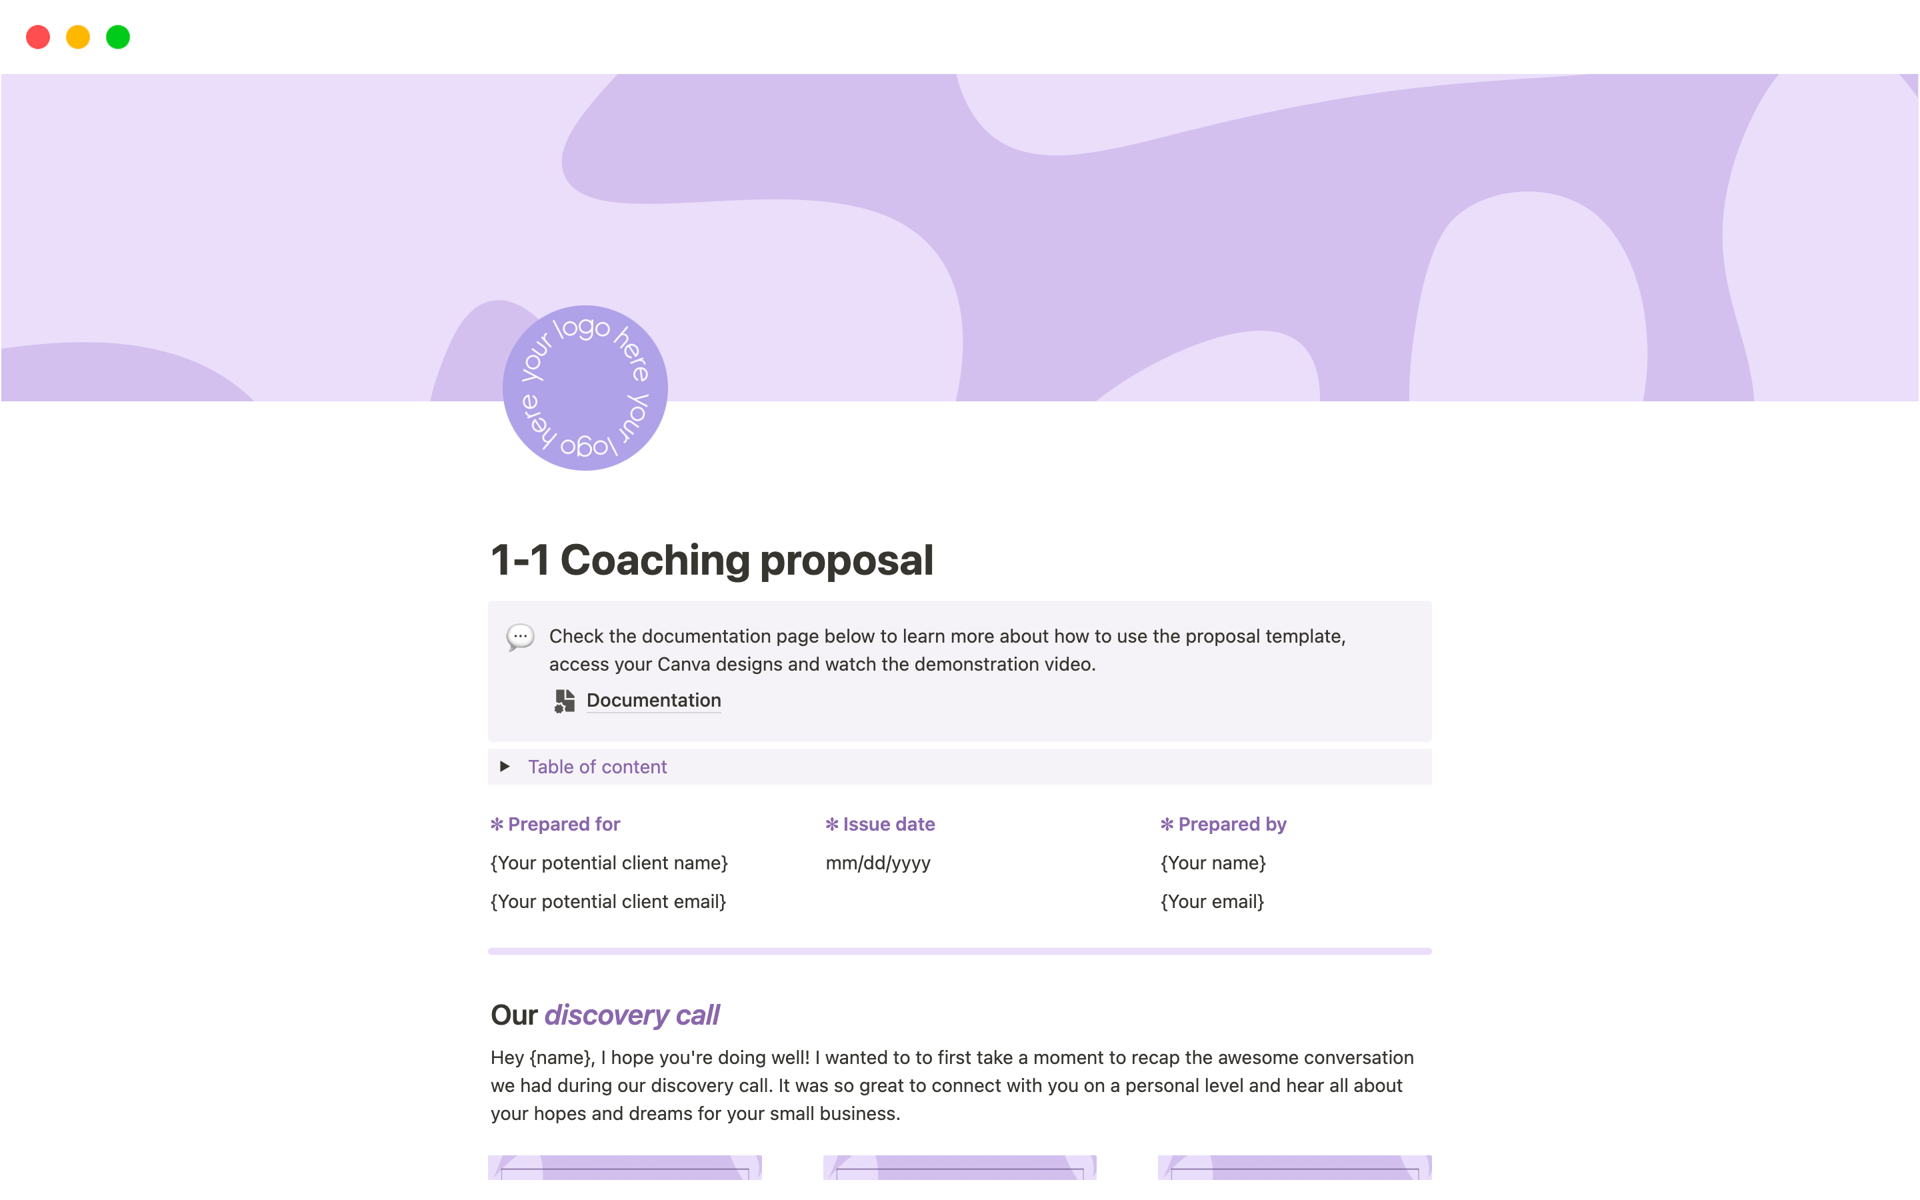 Vista previa de plantilla para 1-1 Coaching proposal